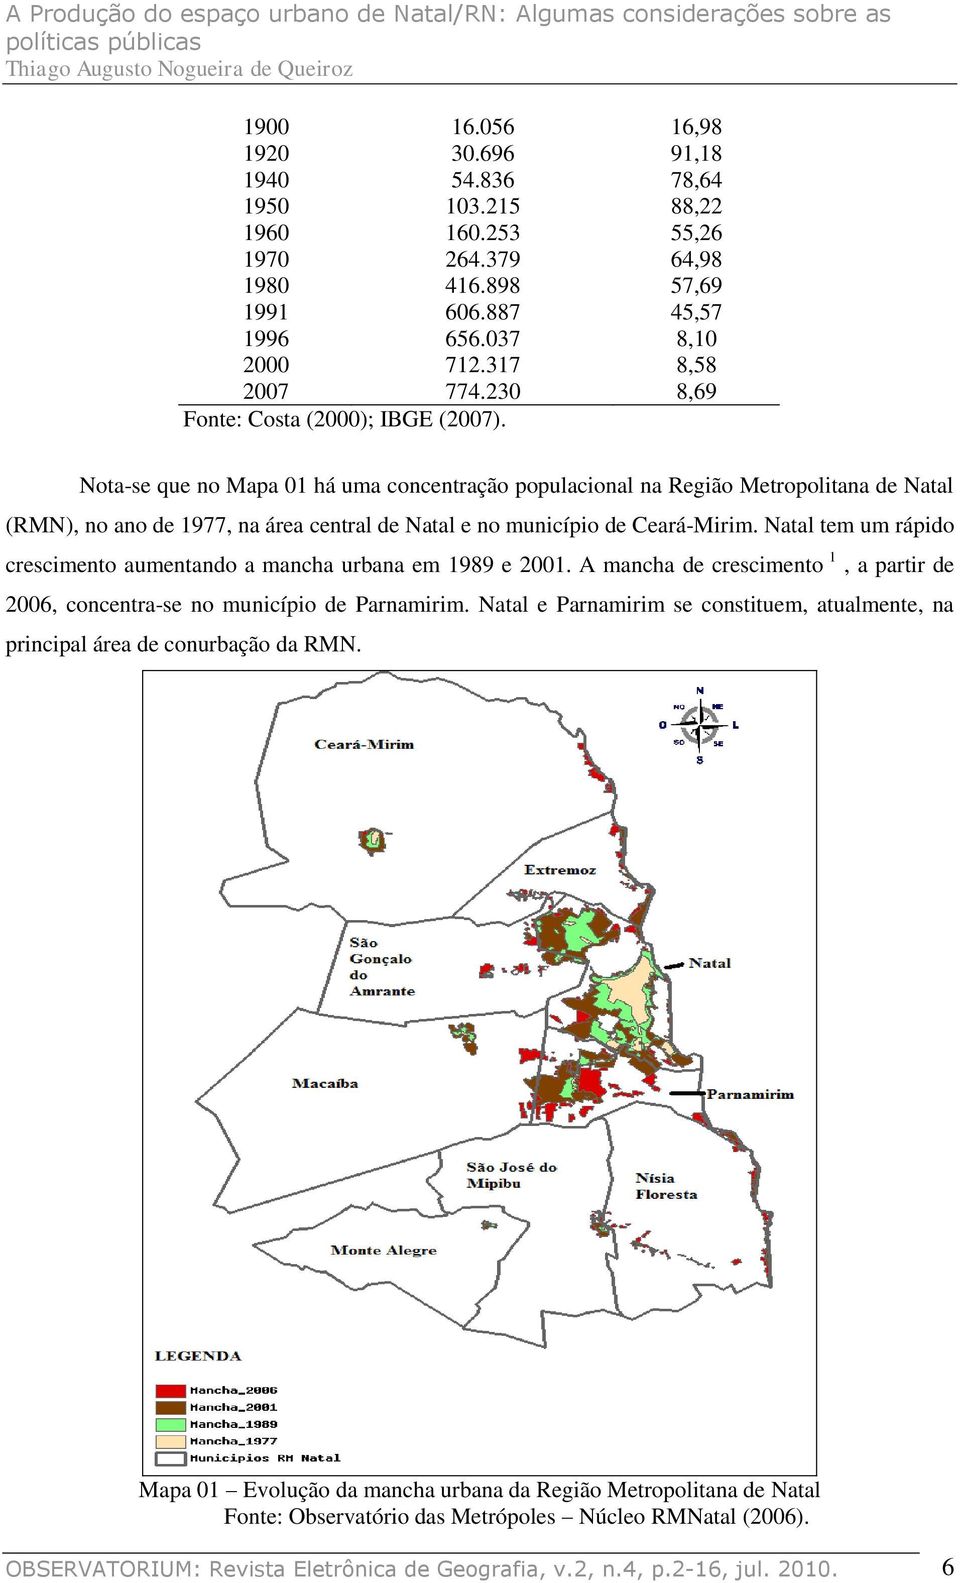 Nota-se que no Mapa 01 há uma concentração populacional na Região Metropolitana de Natal (RMN), no ano de 1977, na área central de Natal e no município de Ceará-Mirim.